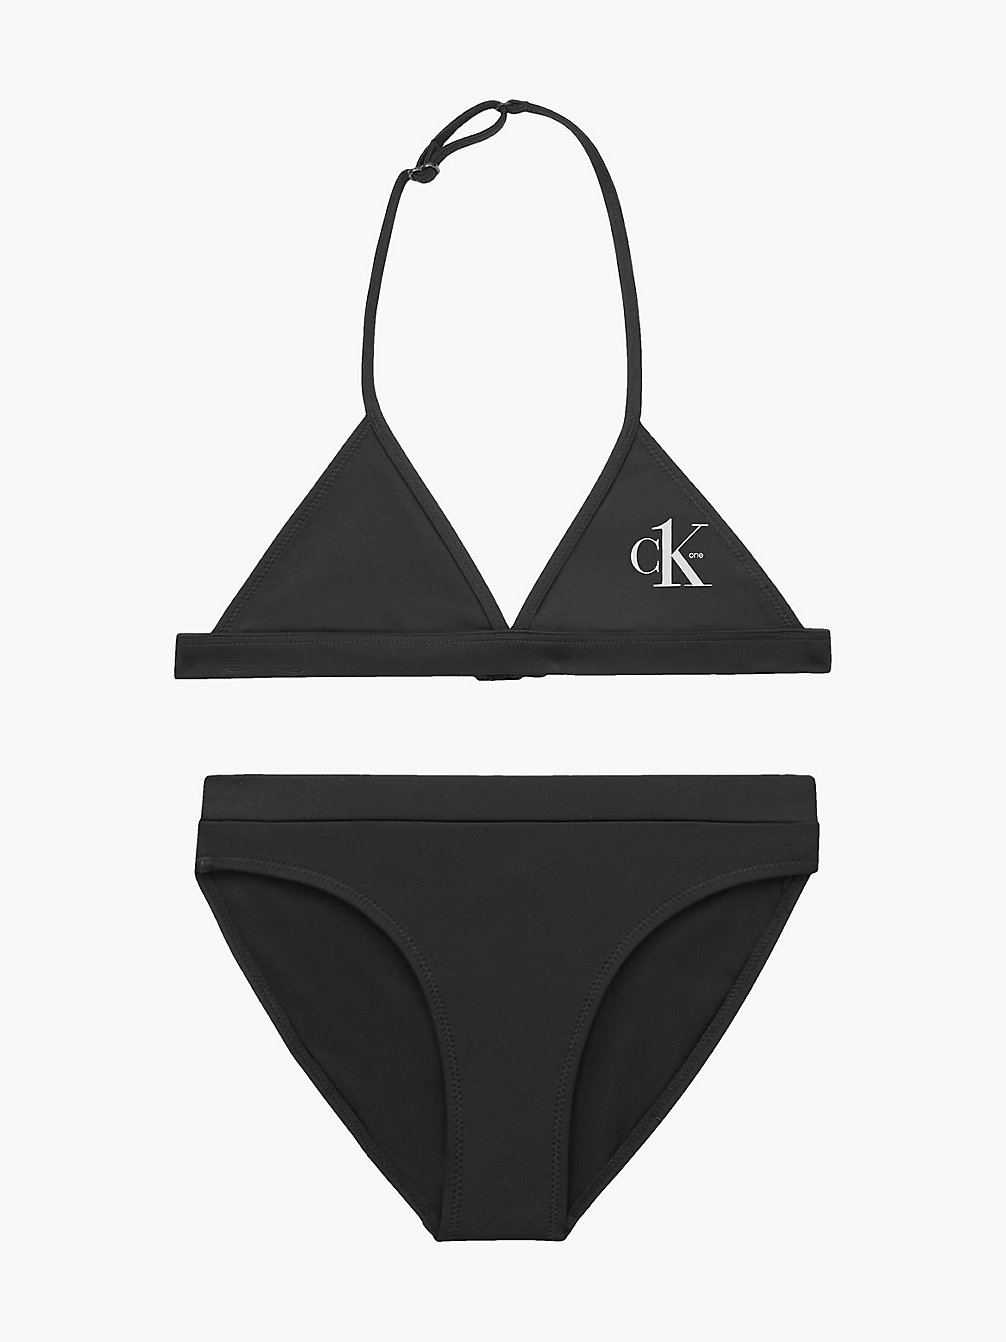 PVH BLACK > Bikini-Set Mit Triangel-Top Für Mädchen - CK One > undefined Maedchen - Calvin Klein